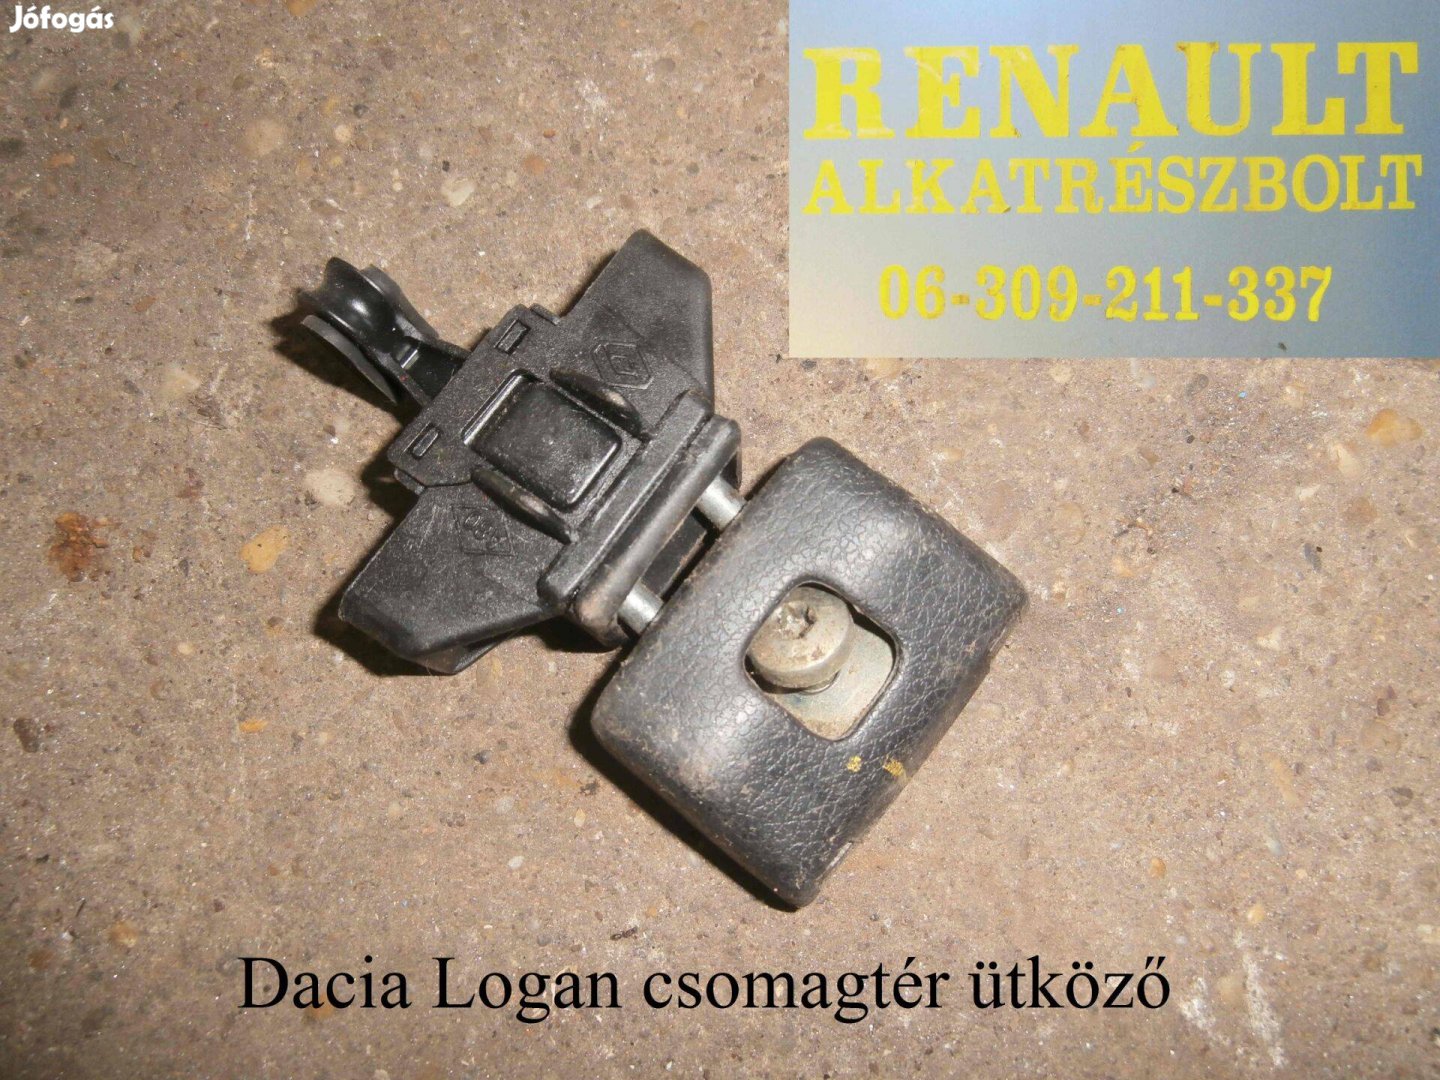 Dacia Logan csomagtér ütküző